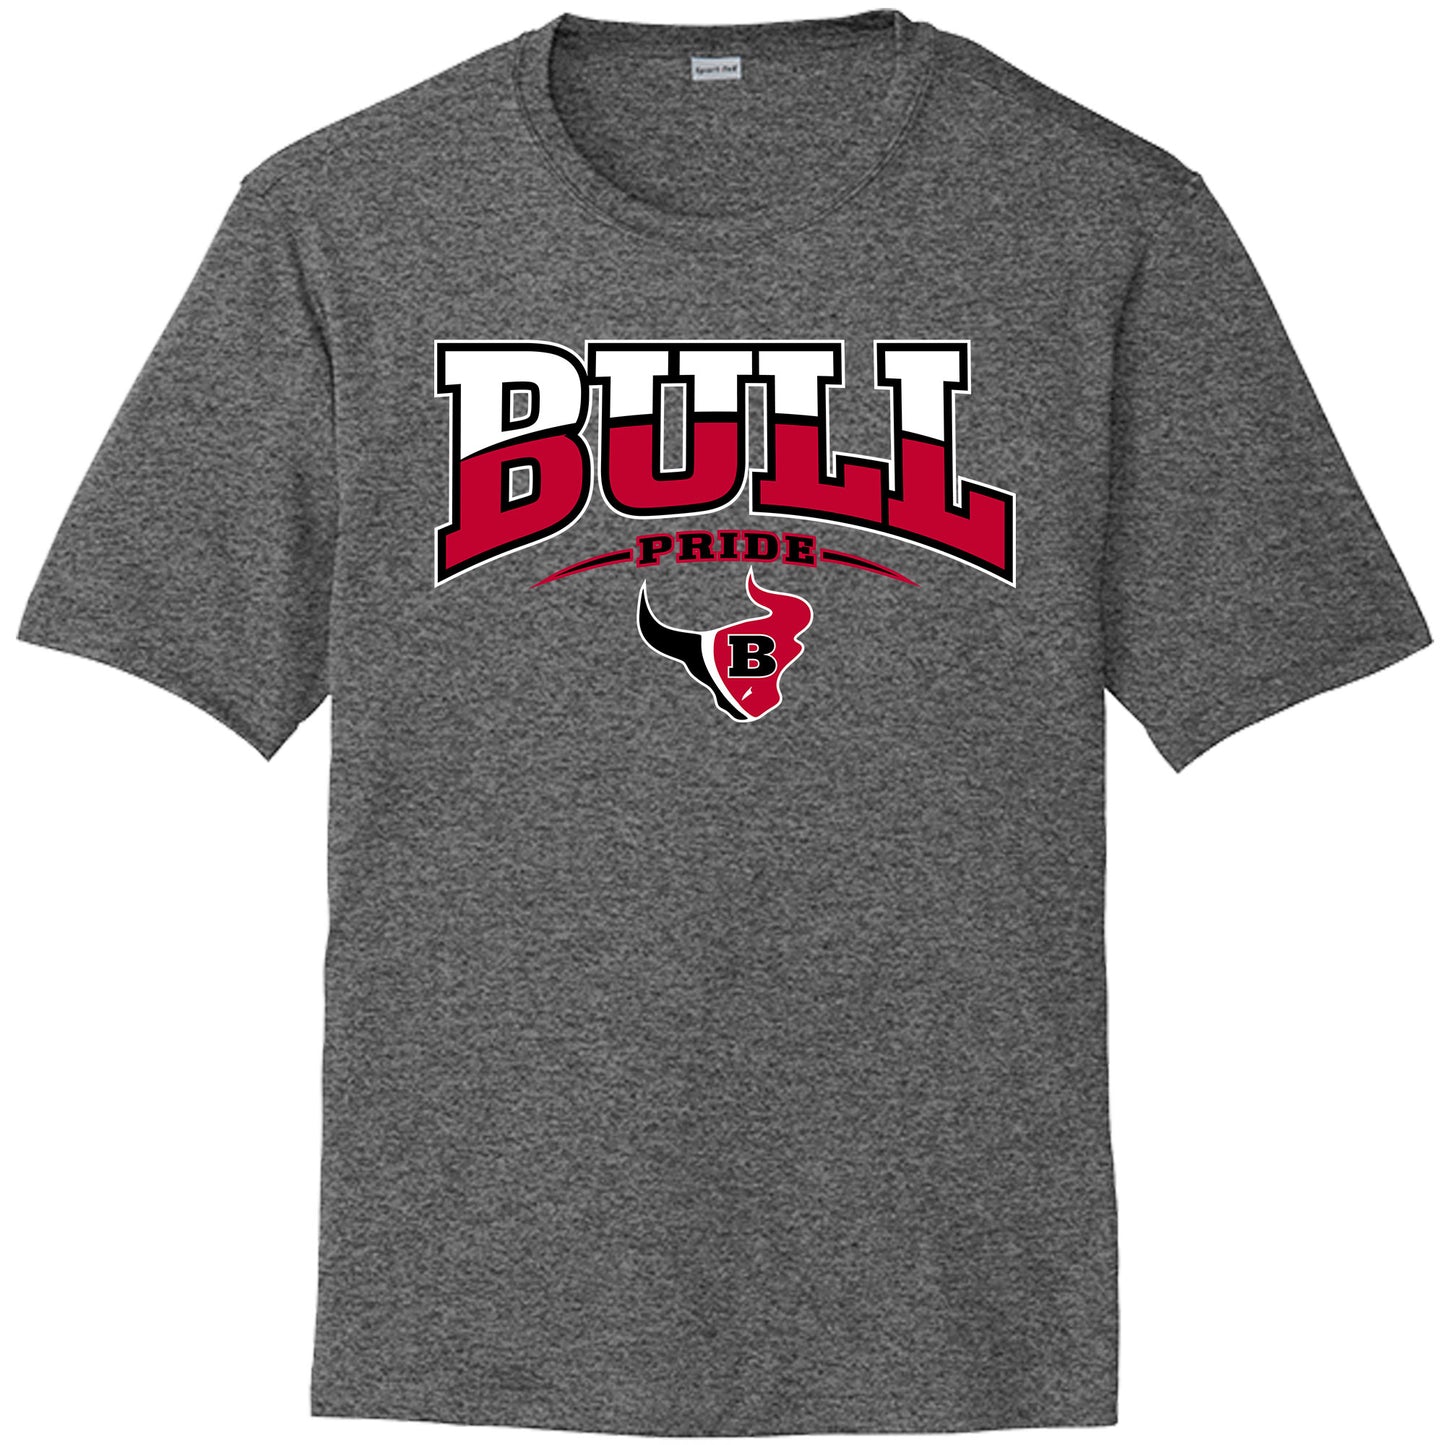 Bloomingdale High School Drifit Shirt "Bulls Pride"